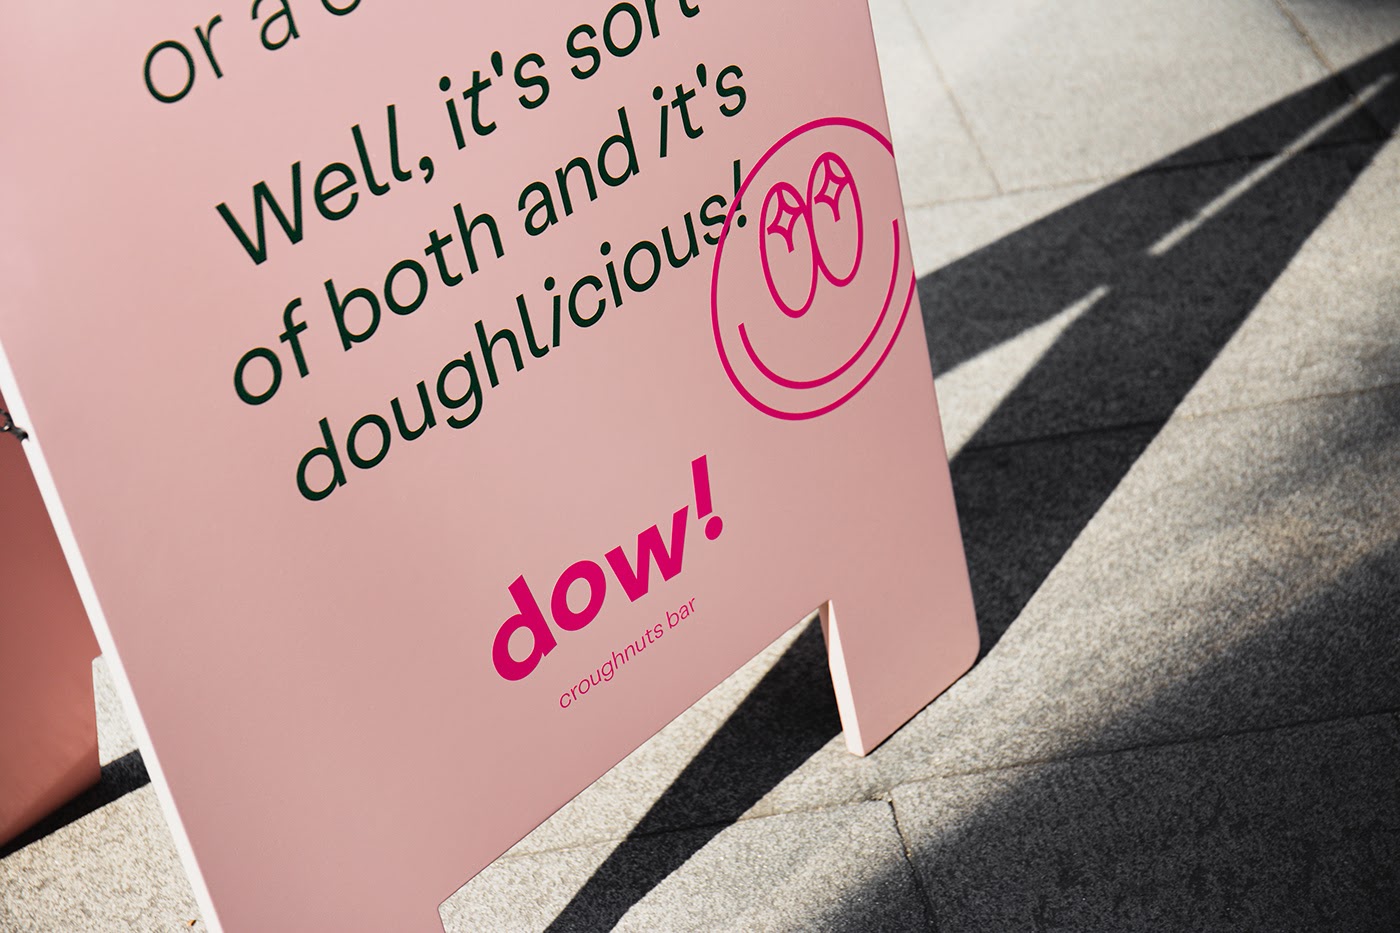 dow!甜品店品牌视觉设计